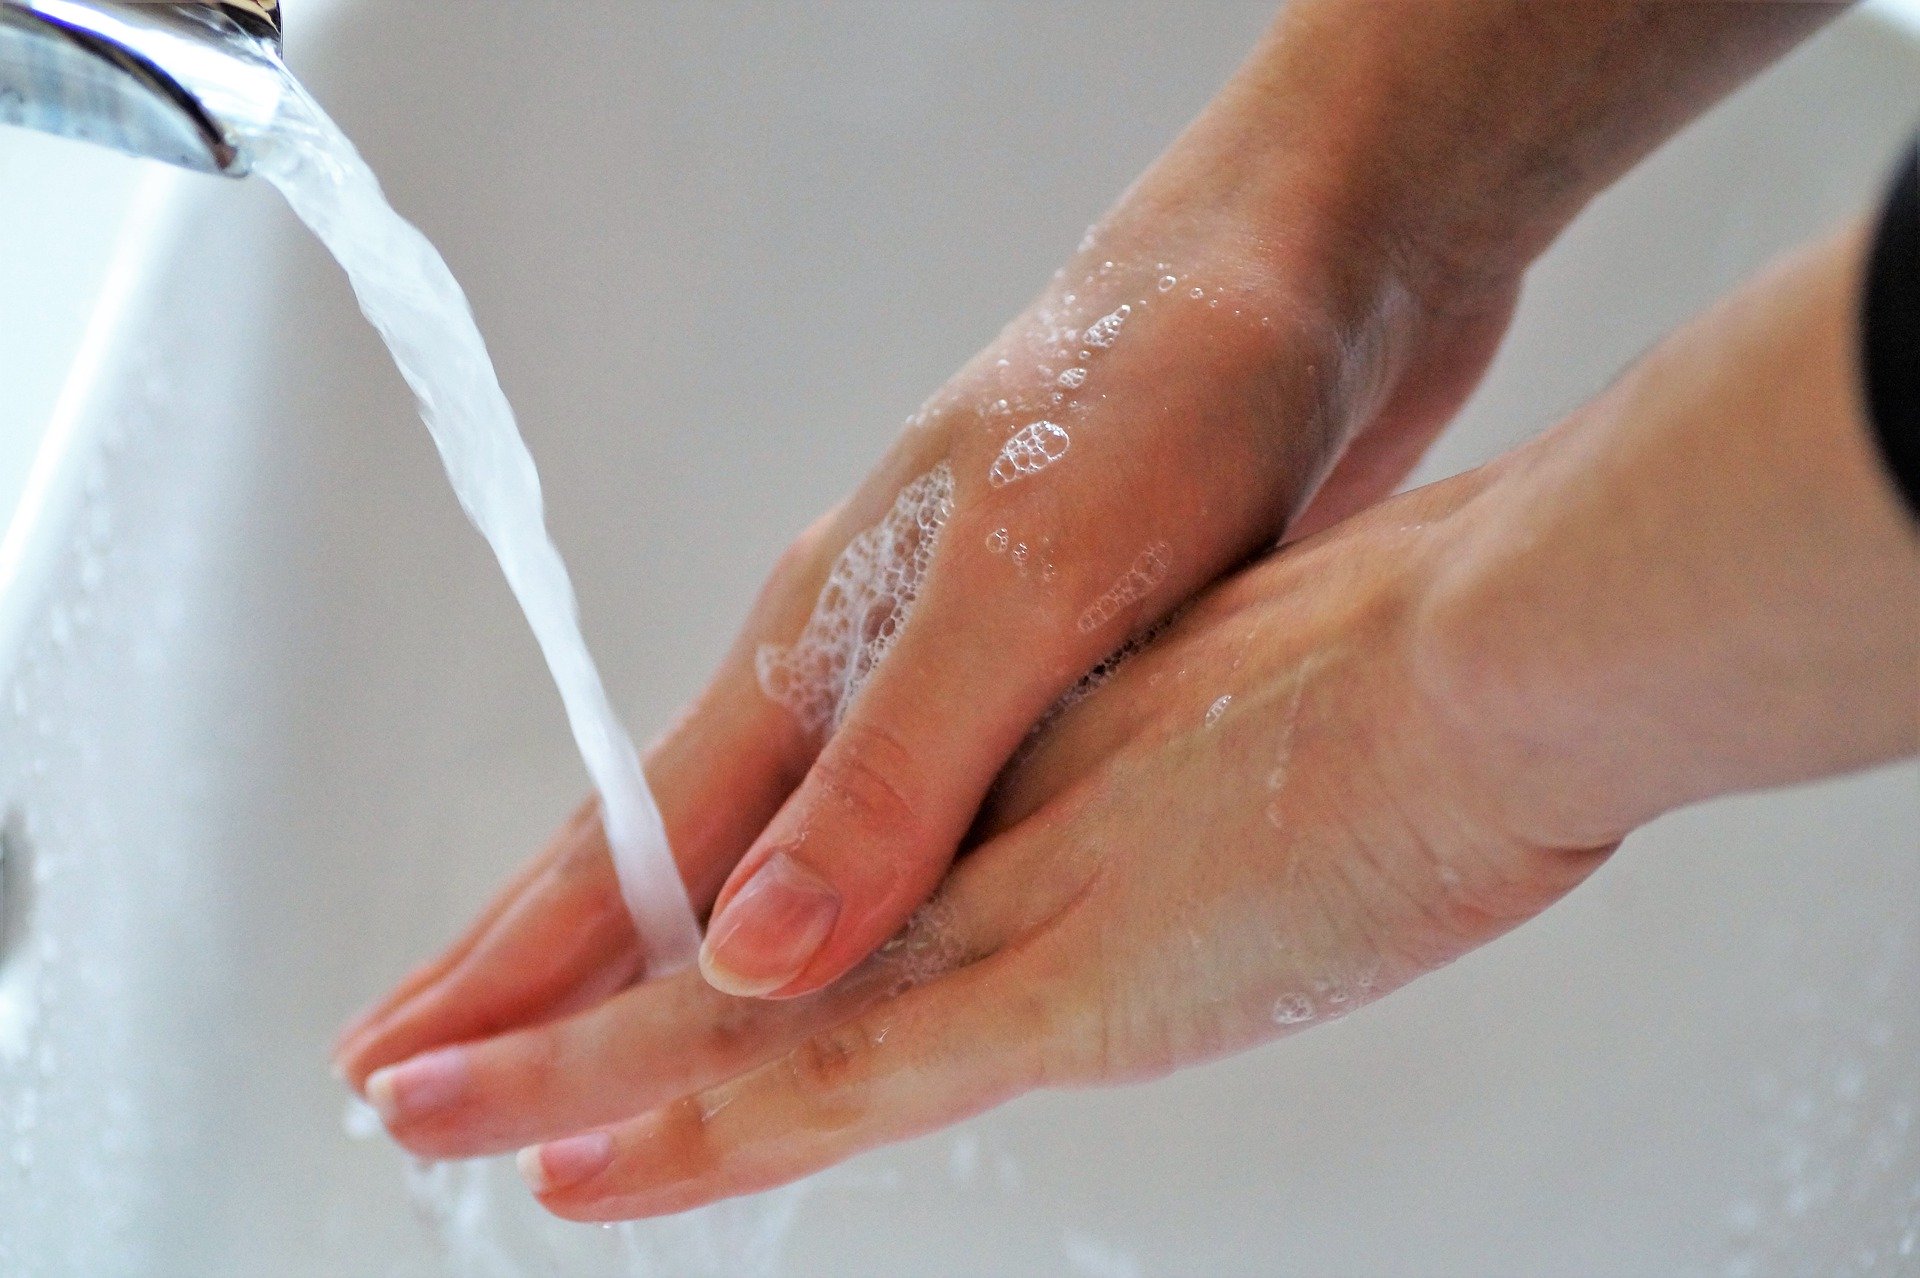 Bezpieczeństwo i higiena - mydło, żel antybakteryjny